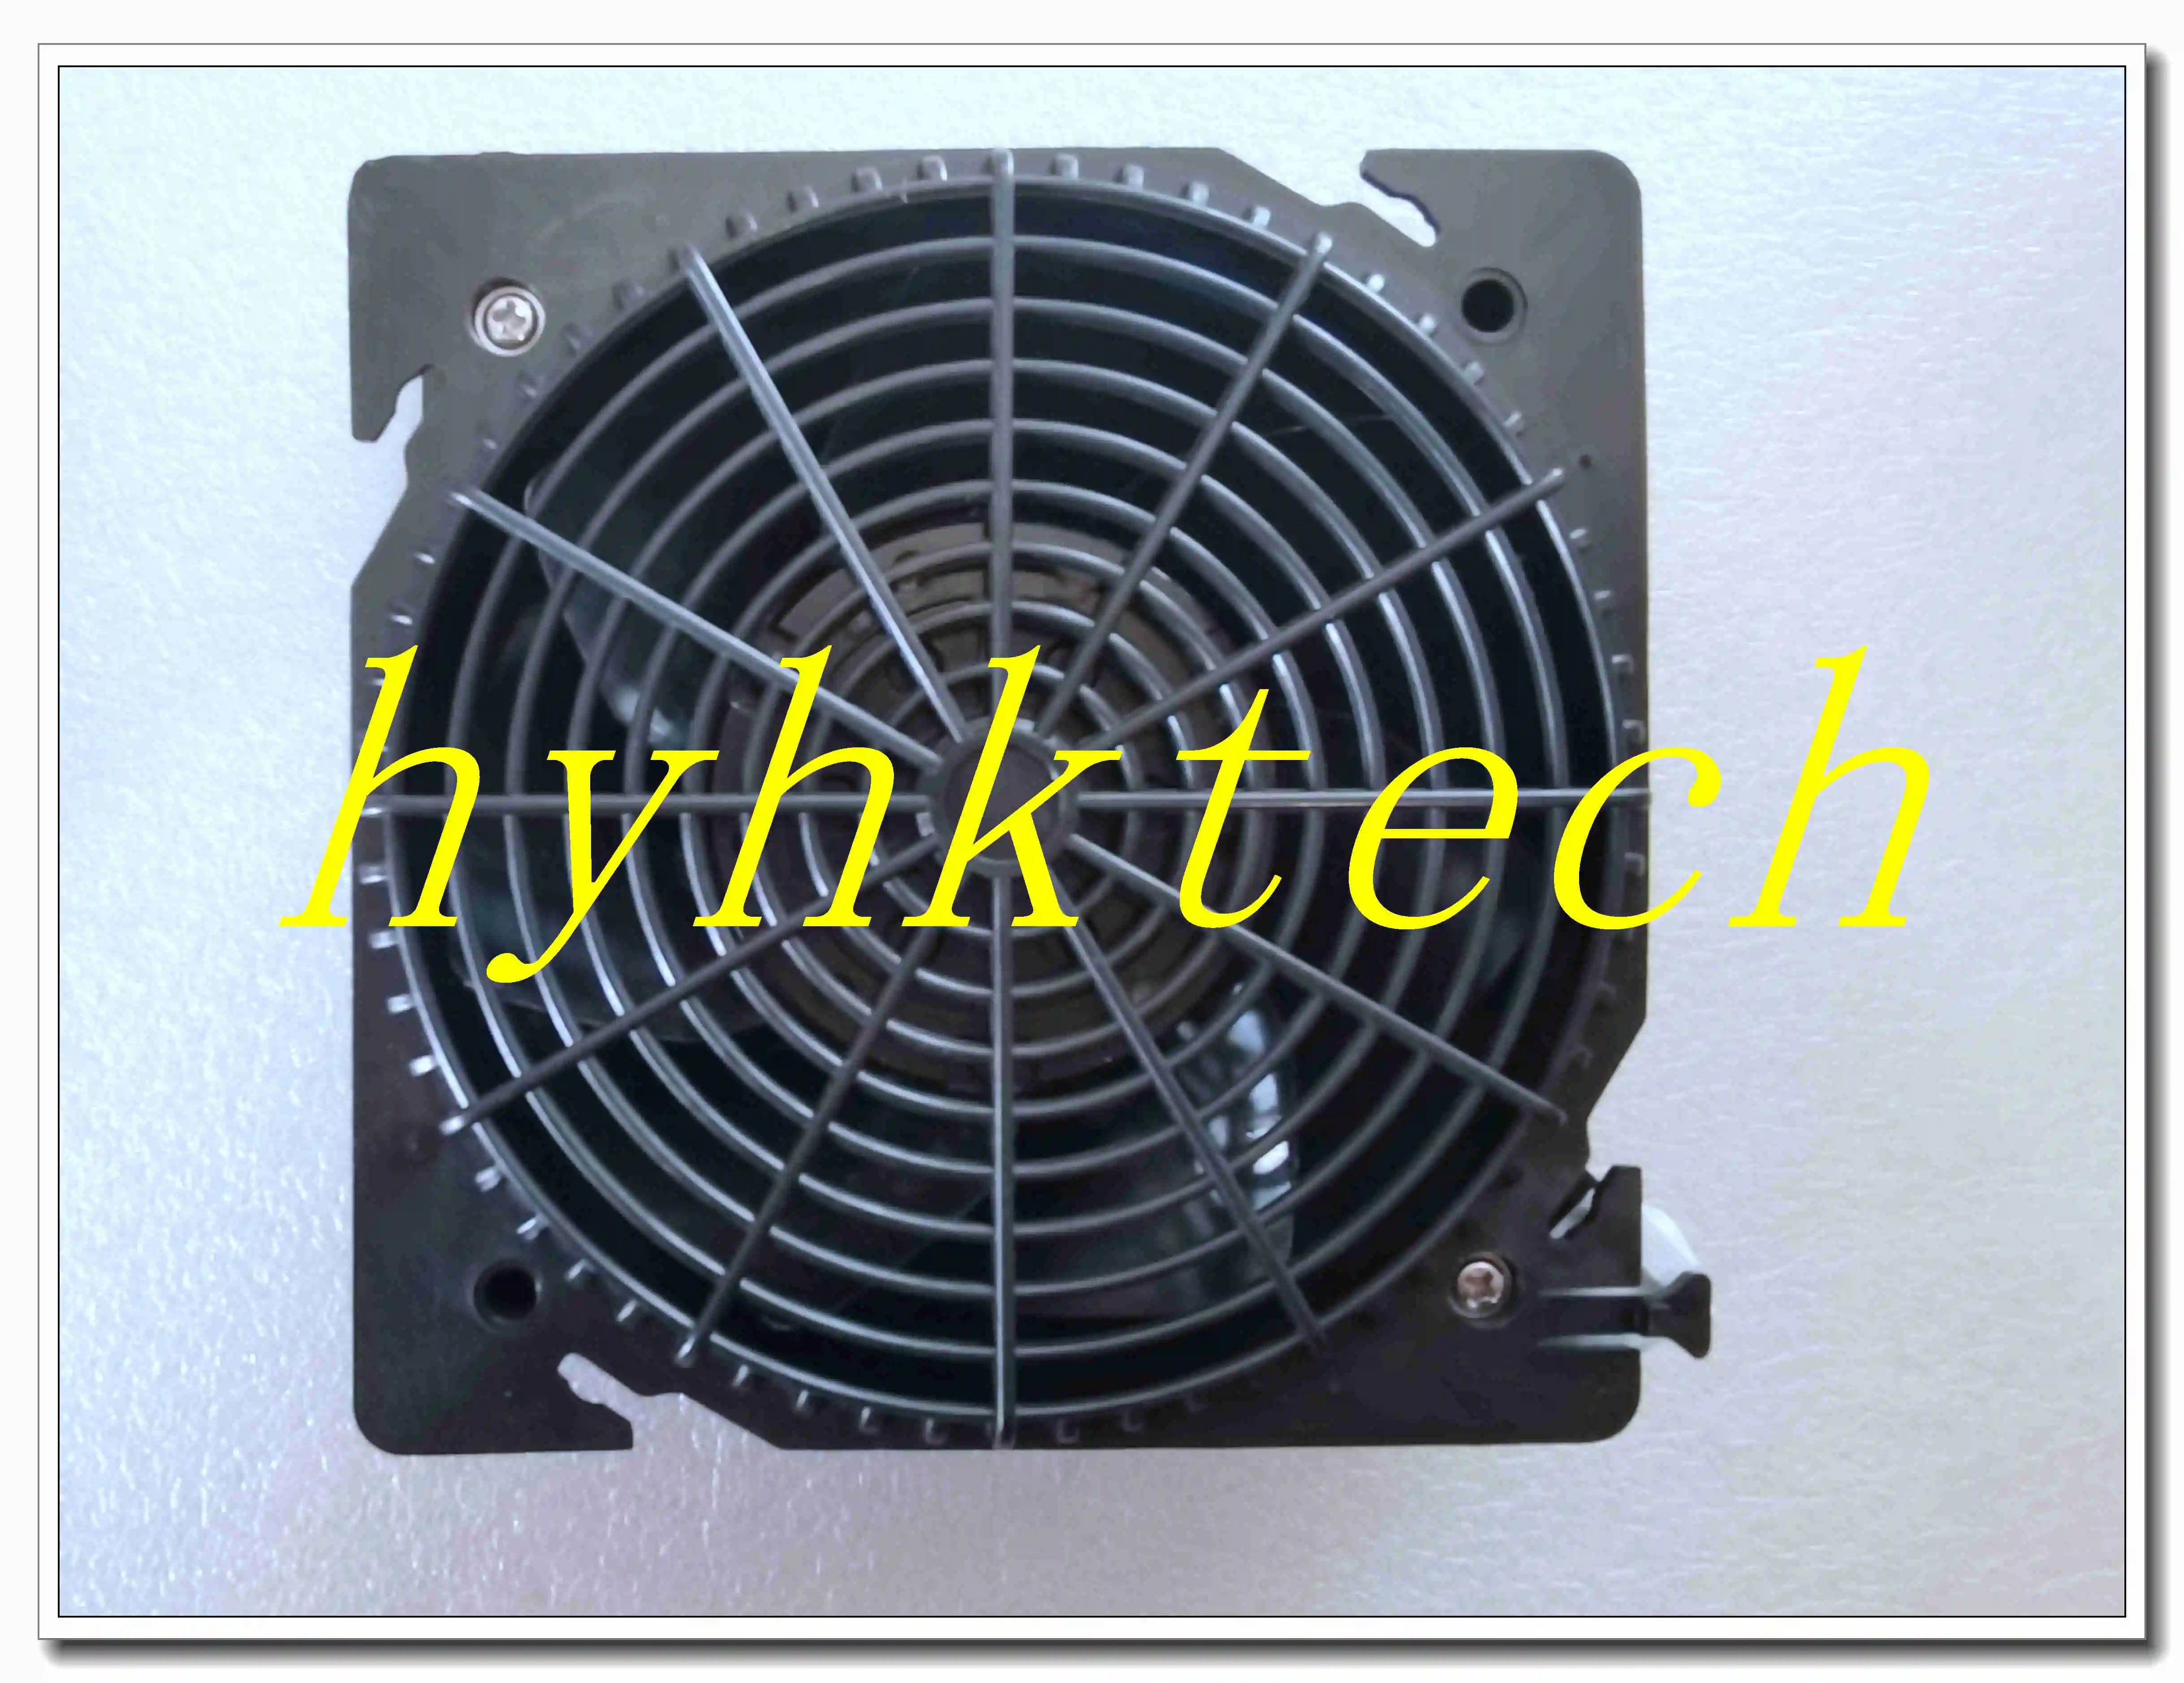 Ventilador de refrigeração original, DV4650-470, C230V, 19W, 12038, 100% testado antes do envio